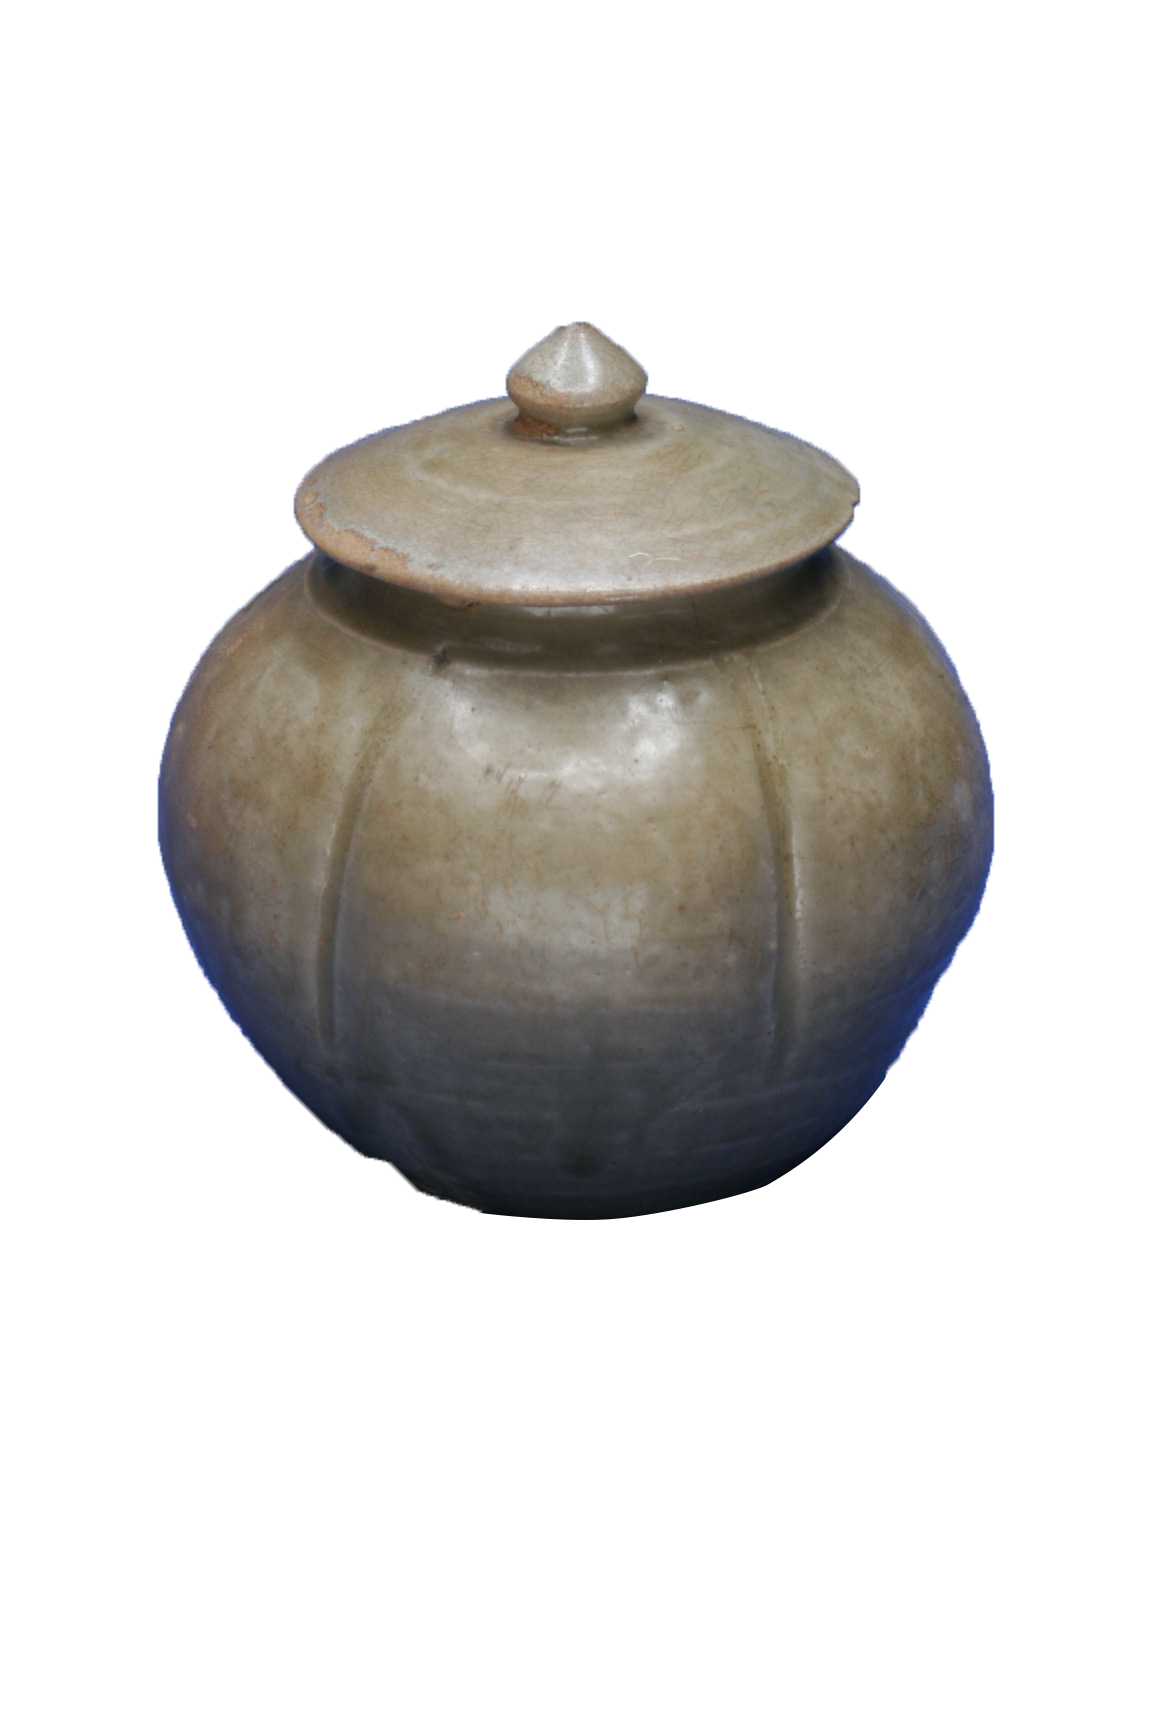 唐代青瓷瓜楞蓋罐